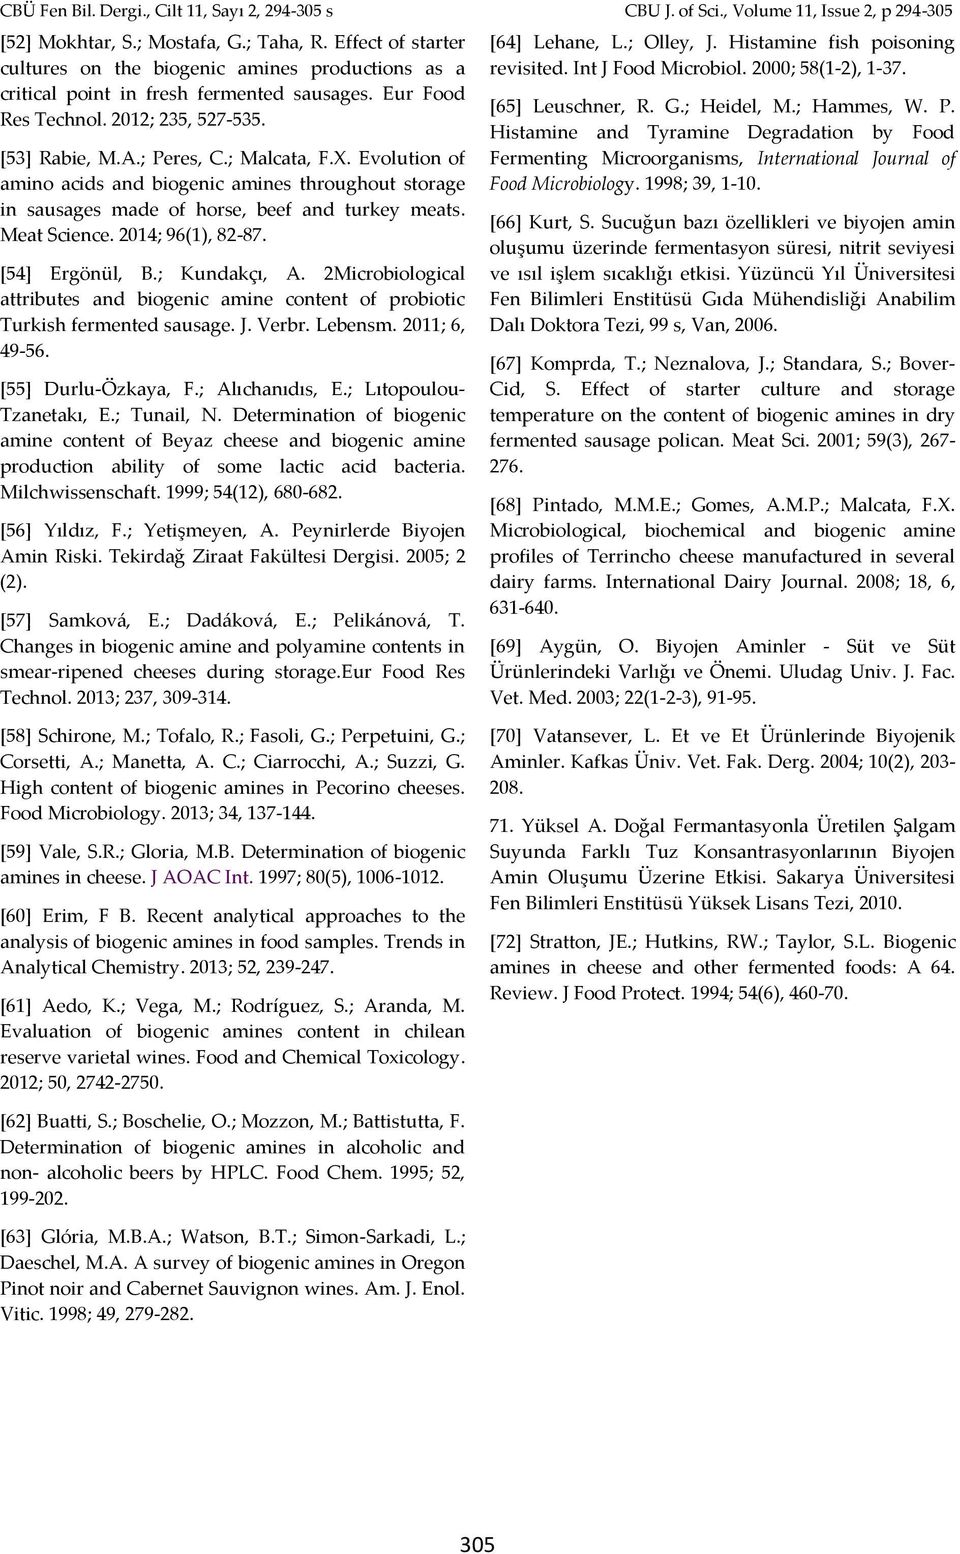 [54] Ergönül, B.; Kundakçı, A. 2Microbiological attributes and biogenic amine content of probiotic Turkish fermented sausage. J. Verbr. Lebensm. 2011; 6, 49-56. [55] Durlu-Özkaya, F.; Alıchanıdıs, E.